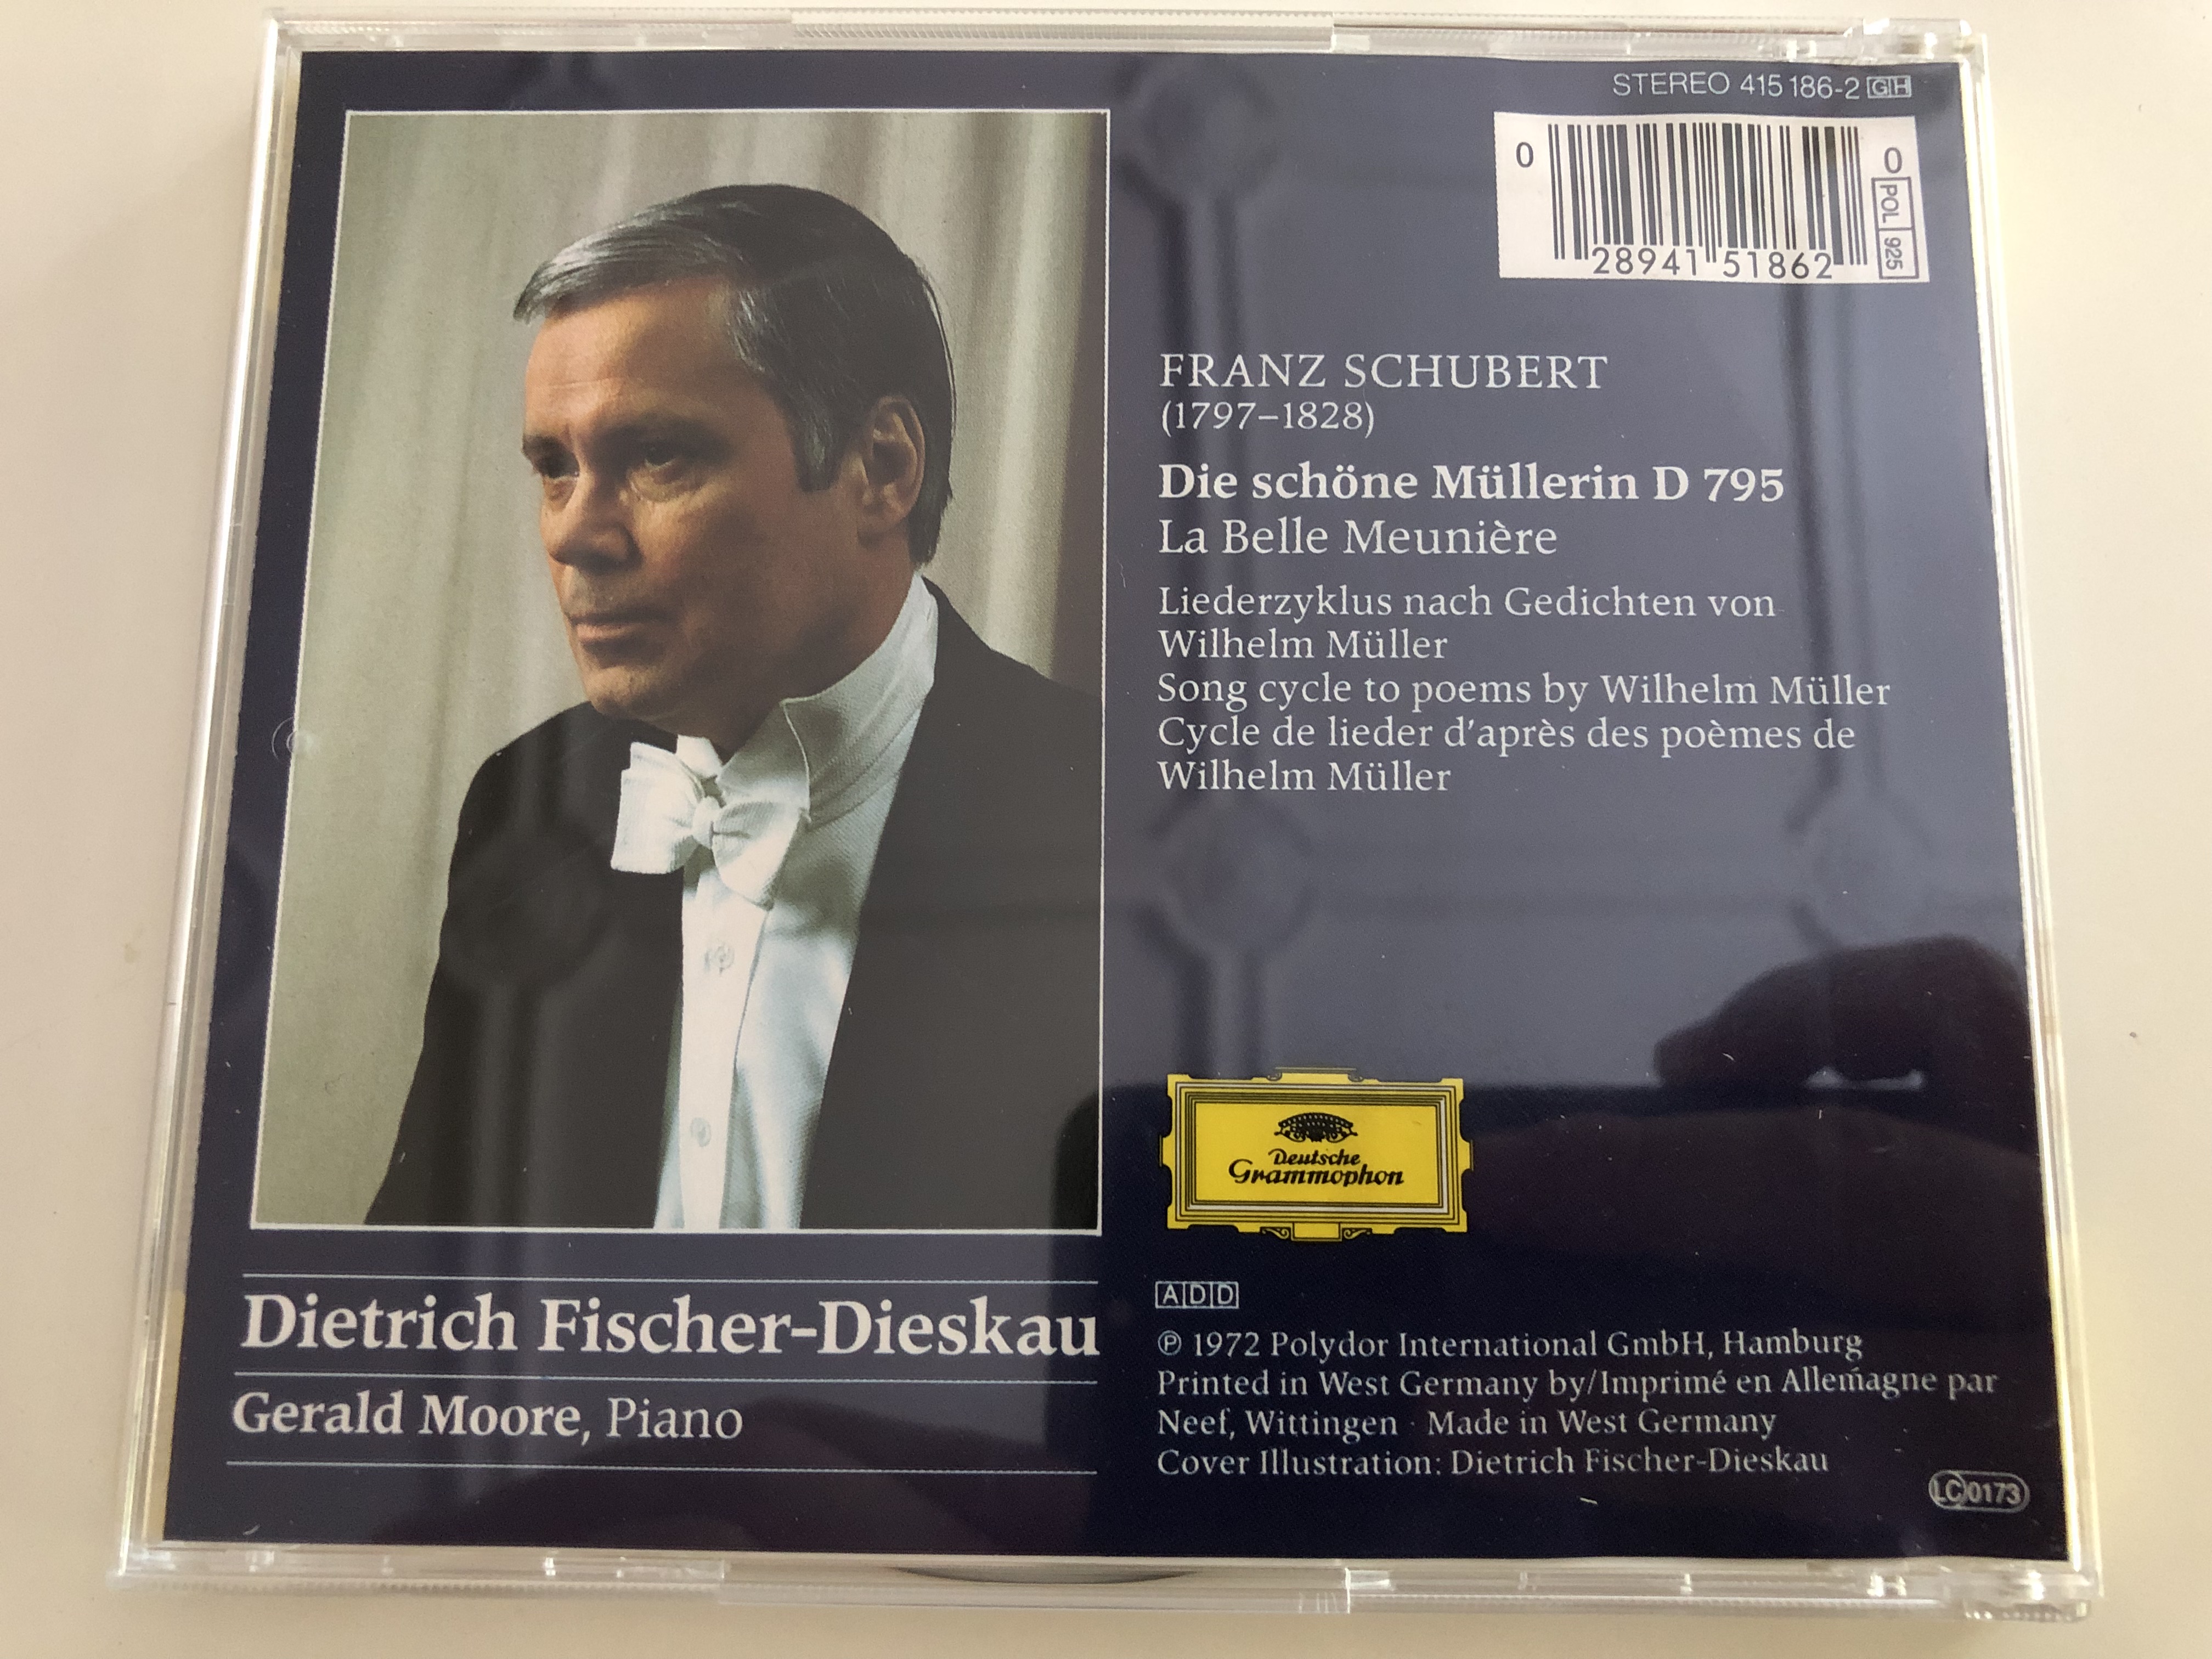 Dietrich Fischer-Dieskau baritone / Schubert: Die schöne Müllerin / Gerald  Moore Piano / Audio CD / 415 186-2 - bibleinmylanguage